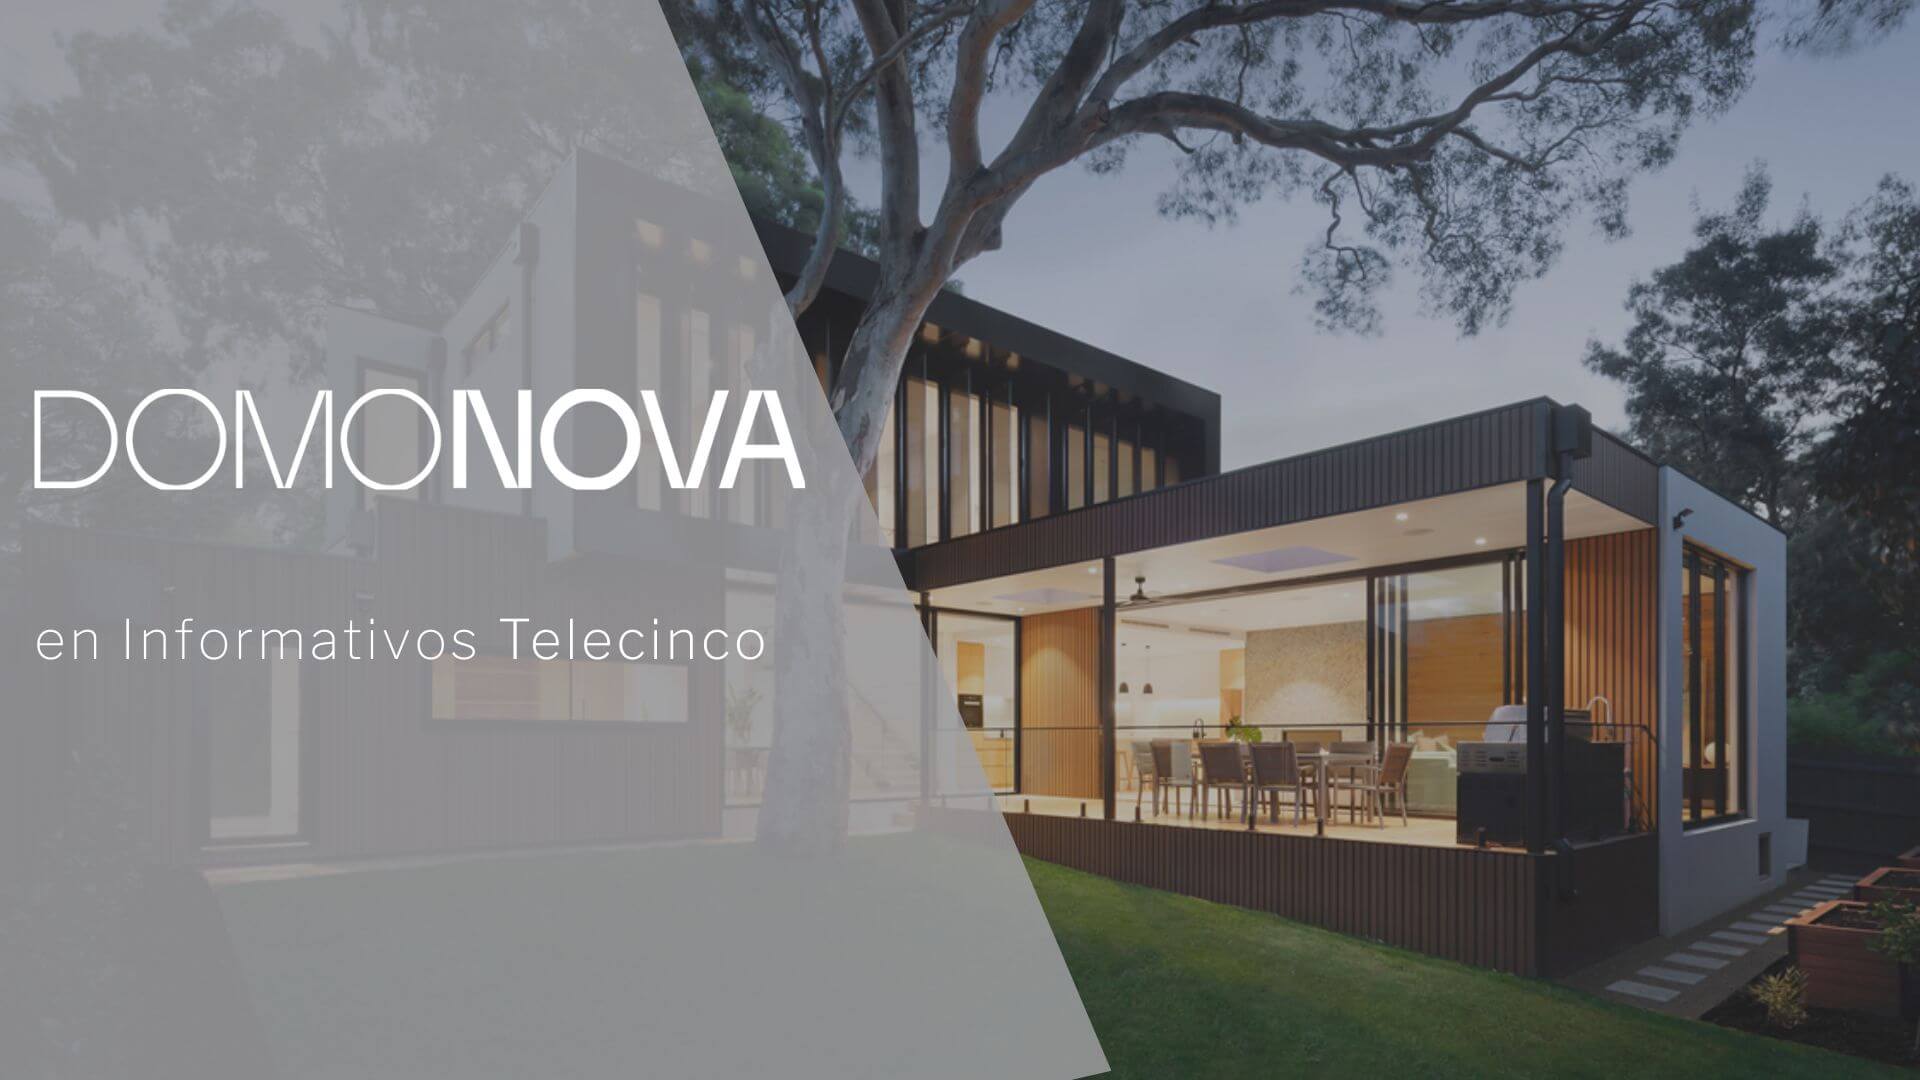 Comentamos el nuevo Plan de Ahorro Energético en Informativos Telecinco con Pedro Núñez, CEO de Domonova